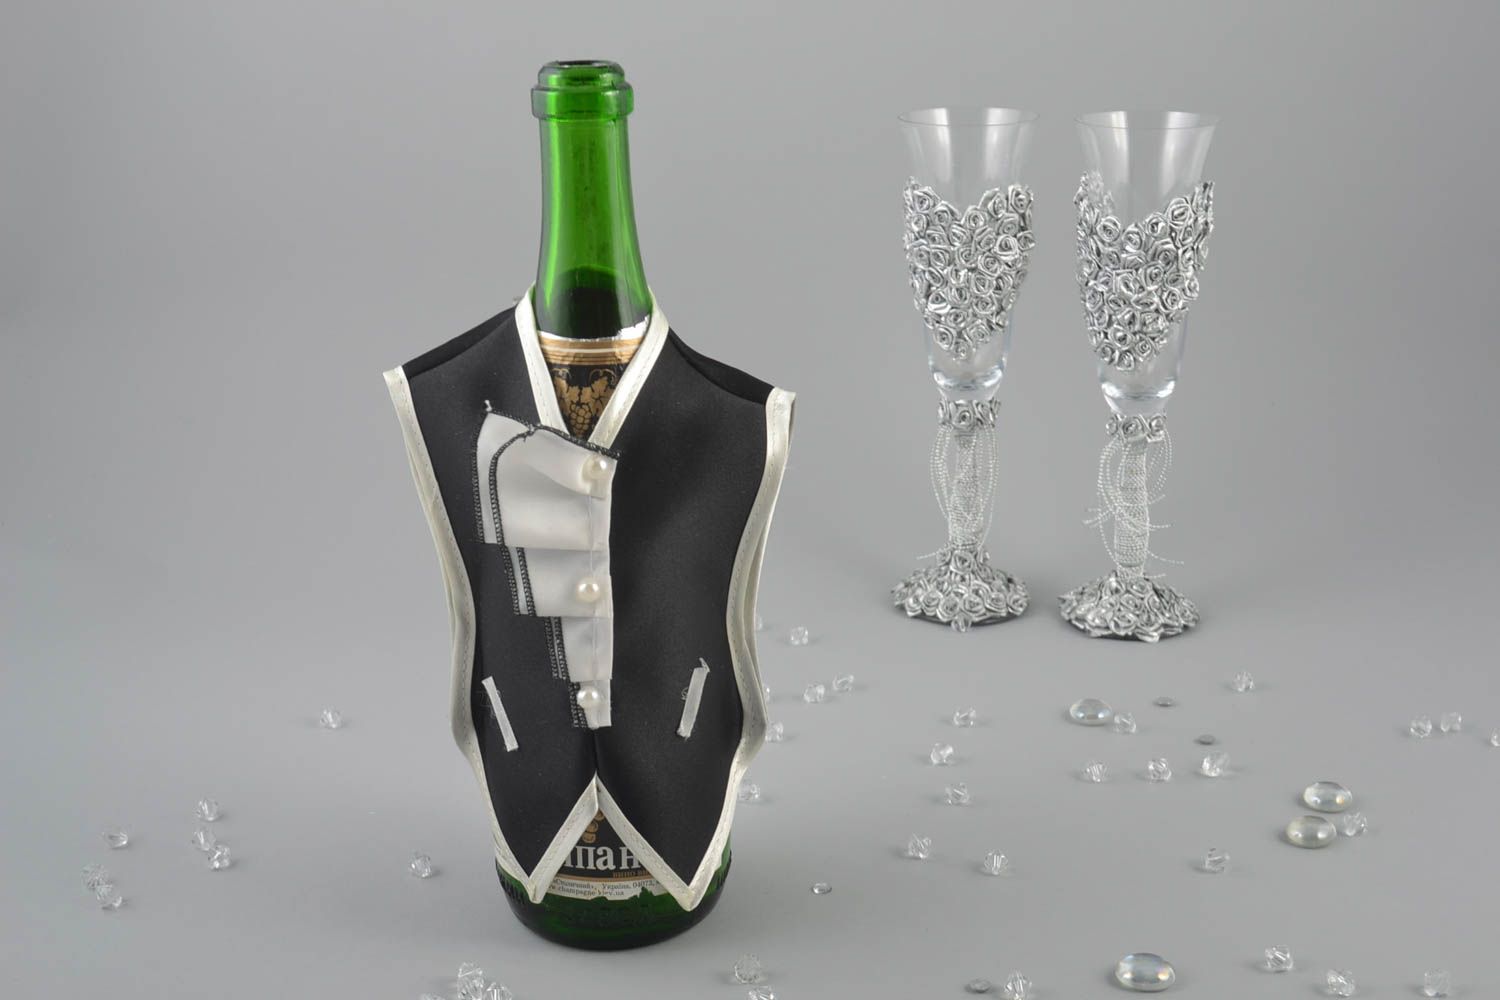 Одежда жениха на бутылку шампанского из атласа хэнд мэйд в виде черного фрака фото 1